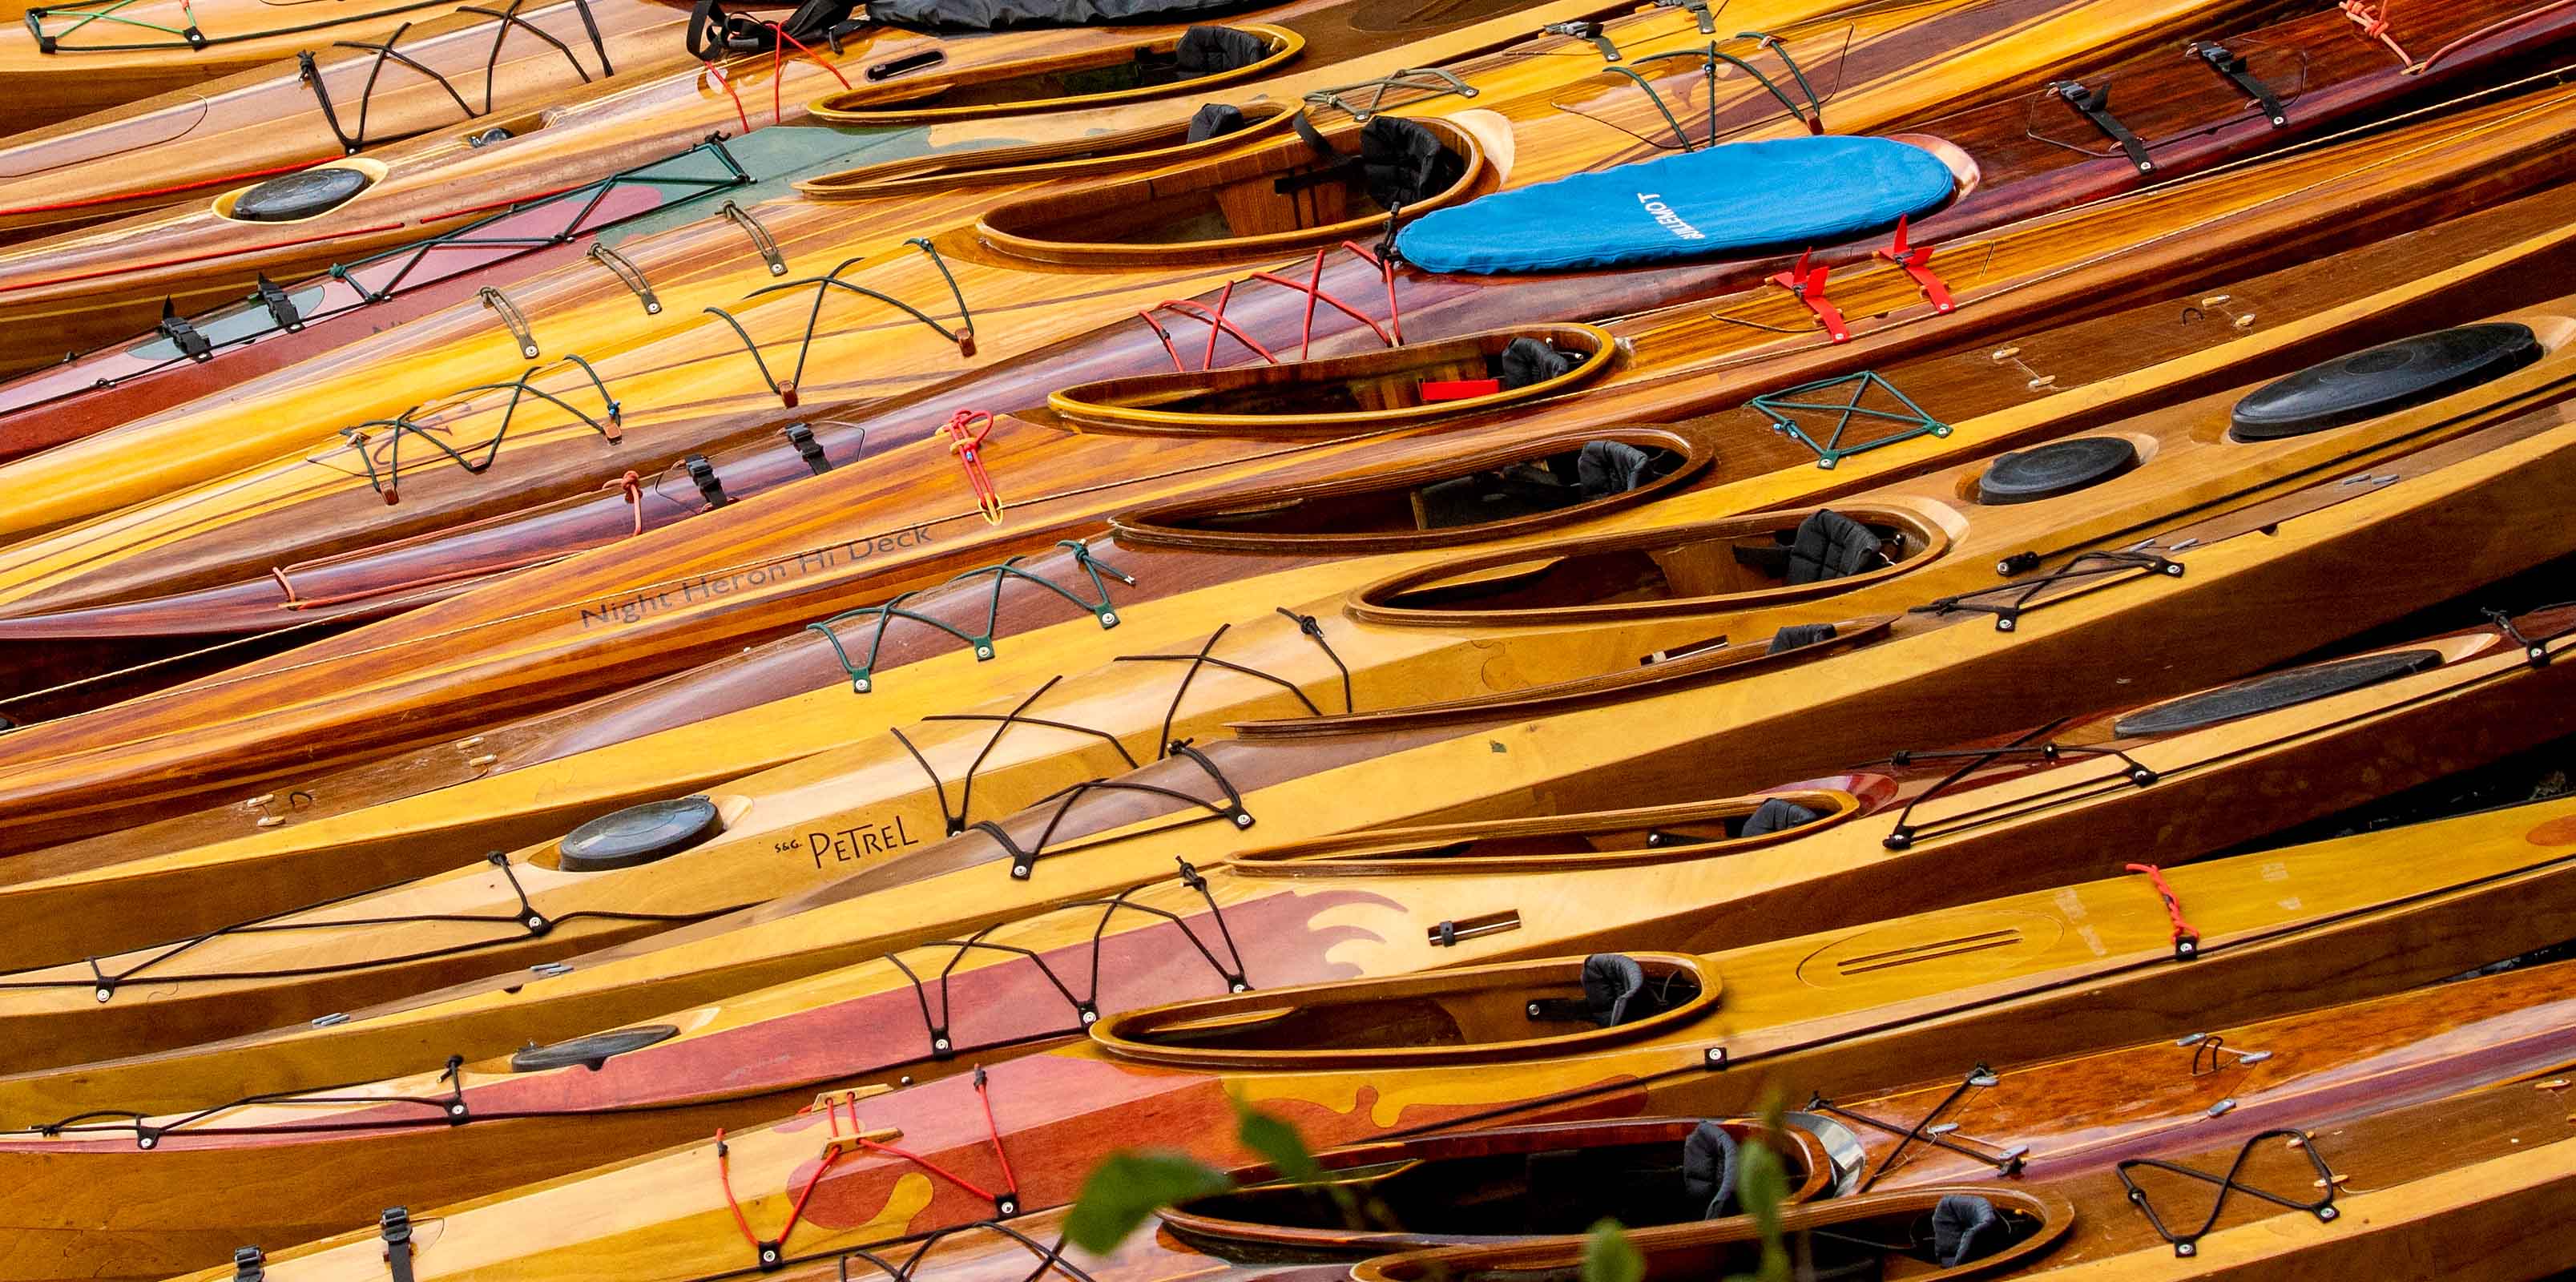 Wooden kayaks on the beach